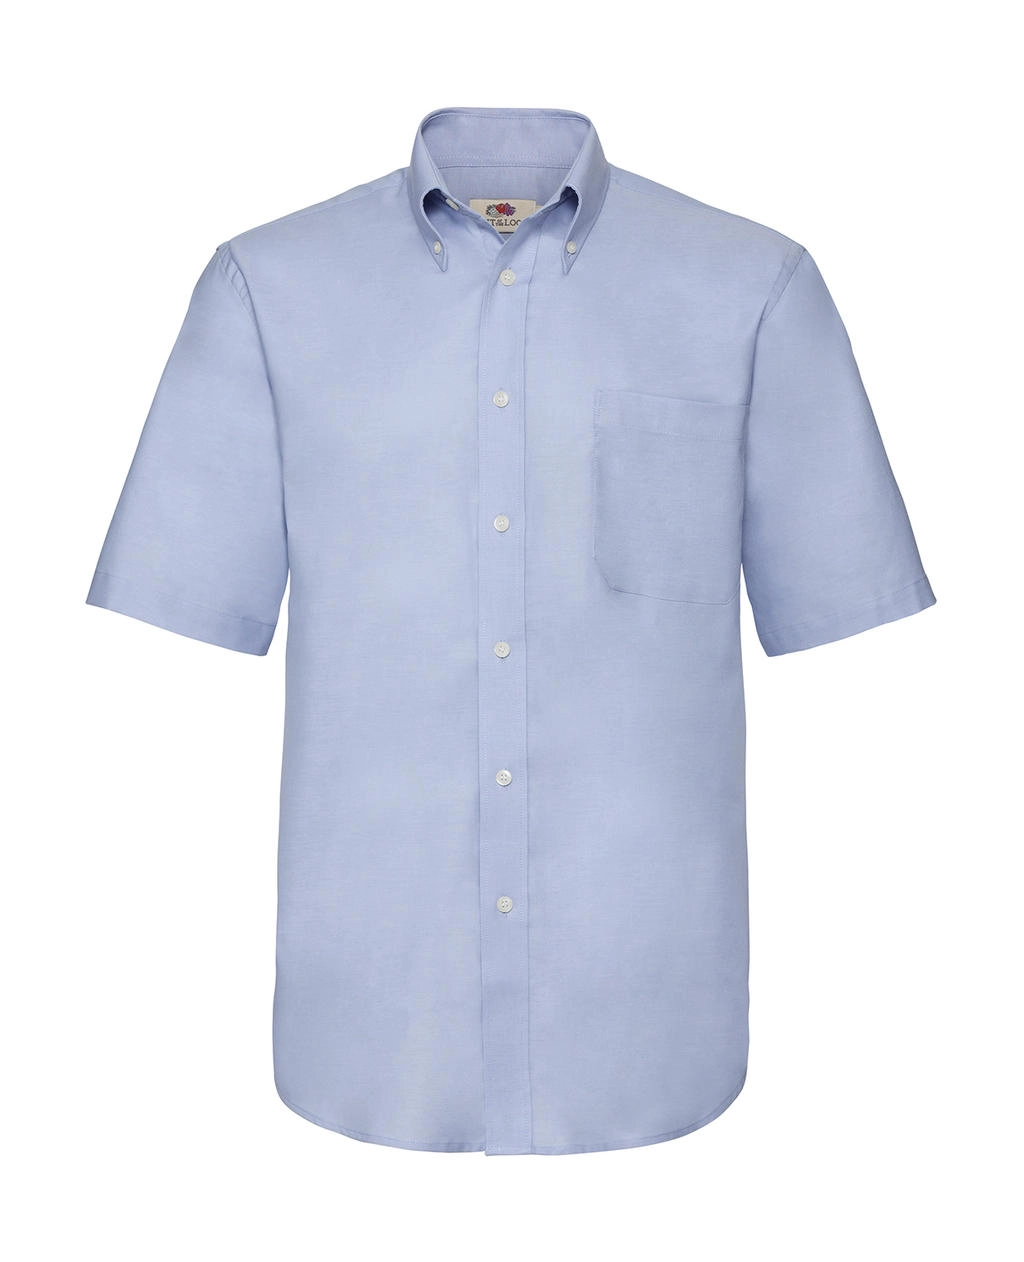 Oxford Shirt zum Besticken und Bedrucken in der Farbe Oxford Blue mit Ihren Logo, Schriftzug oder Motiv.